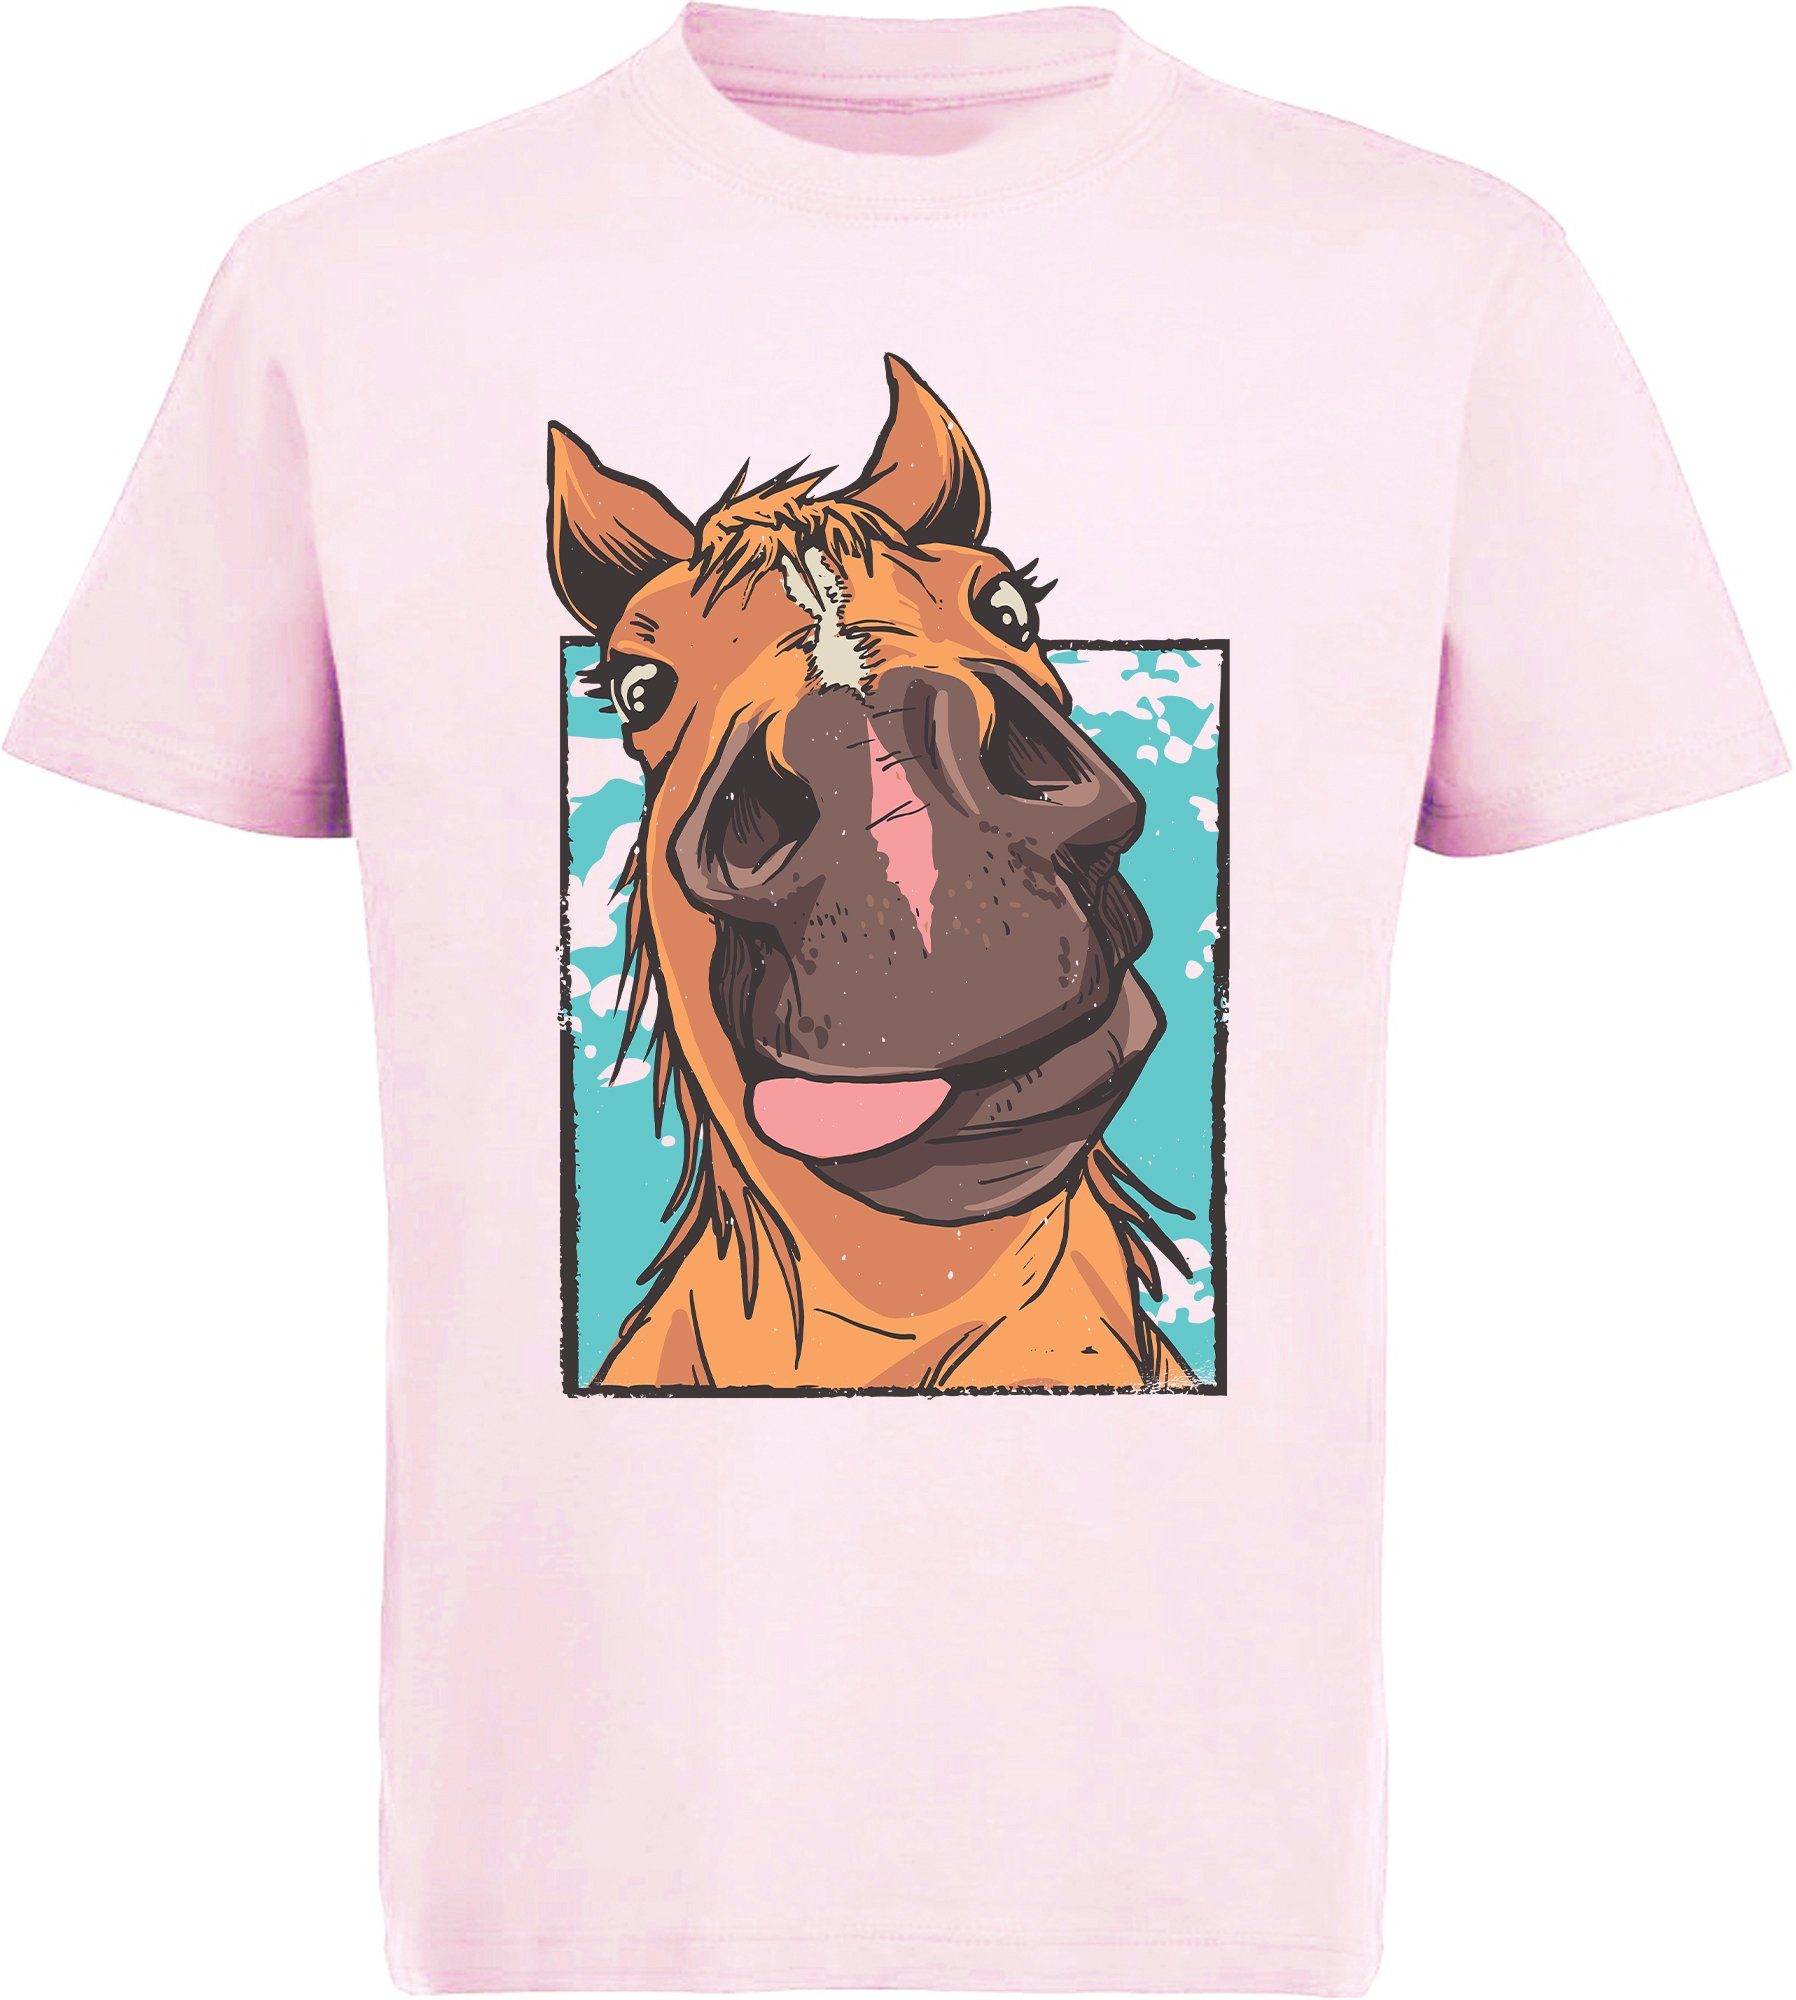 MyDesign24 Print-Shirt bedrucktes Kinder Zunge T-Shirt lustiger mit Pferdekopf rosa Aufdruck, Baumwollshirt mit i153